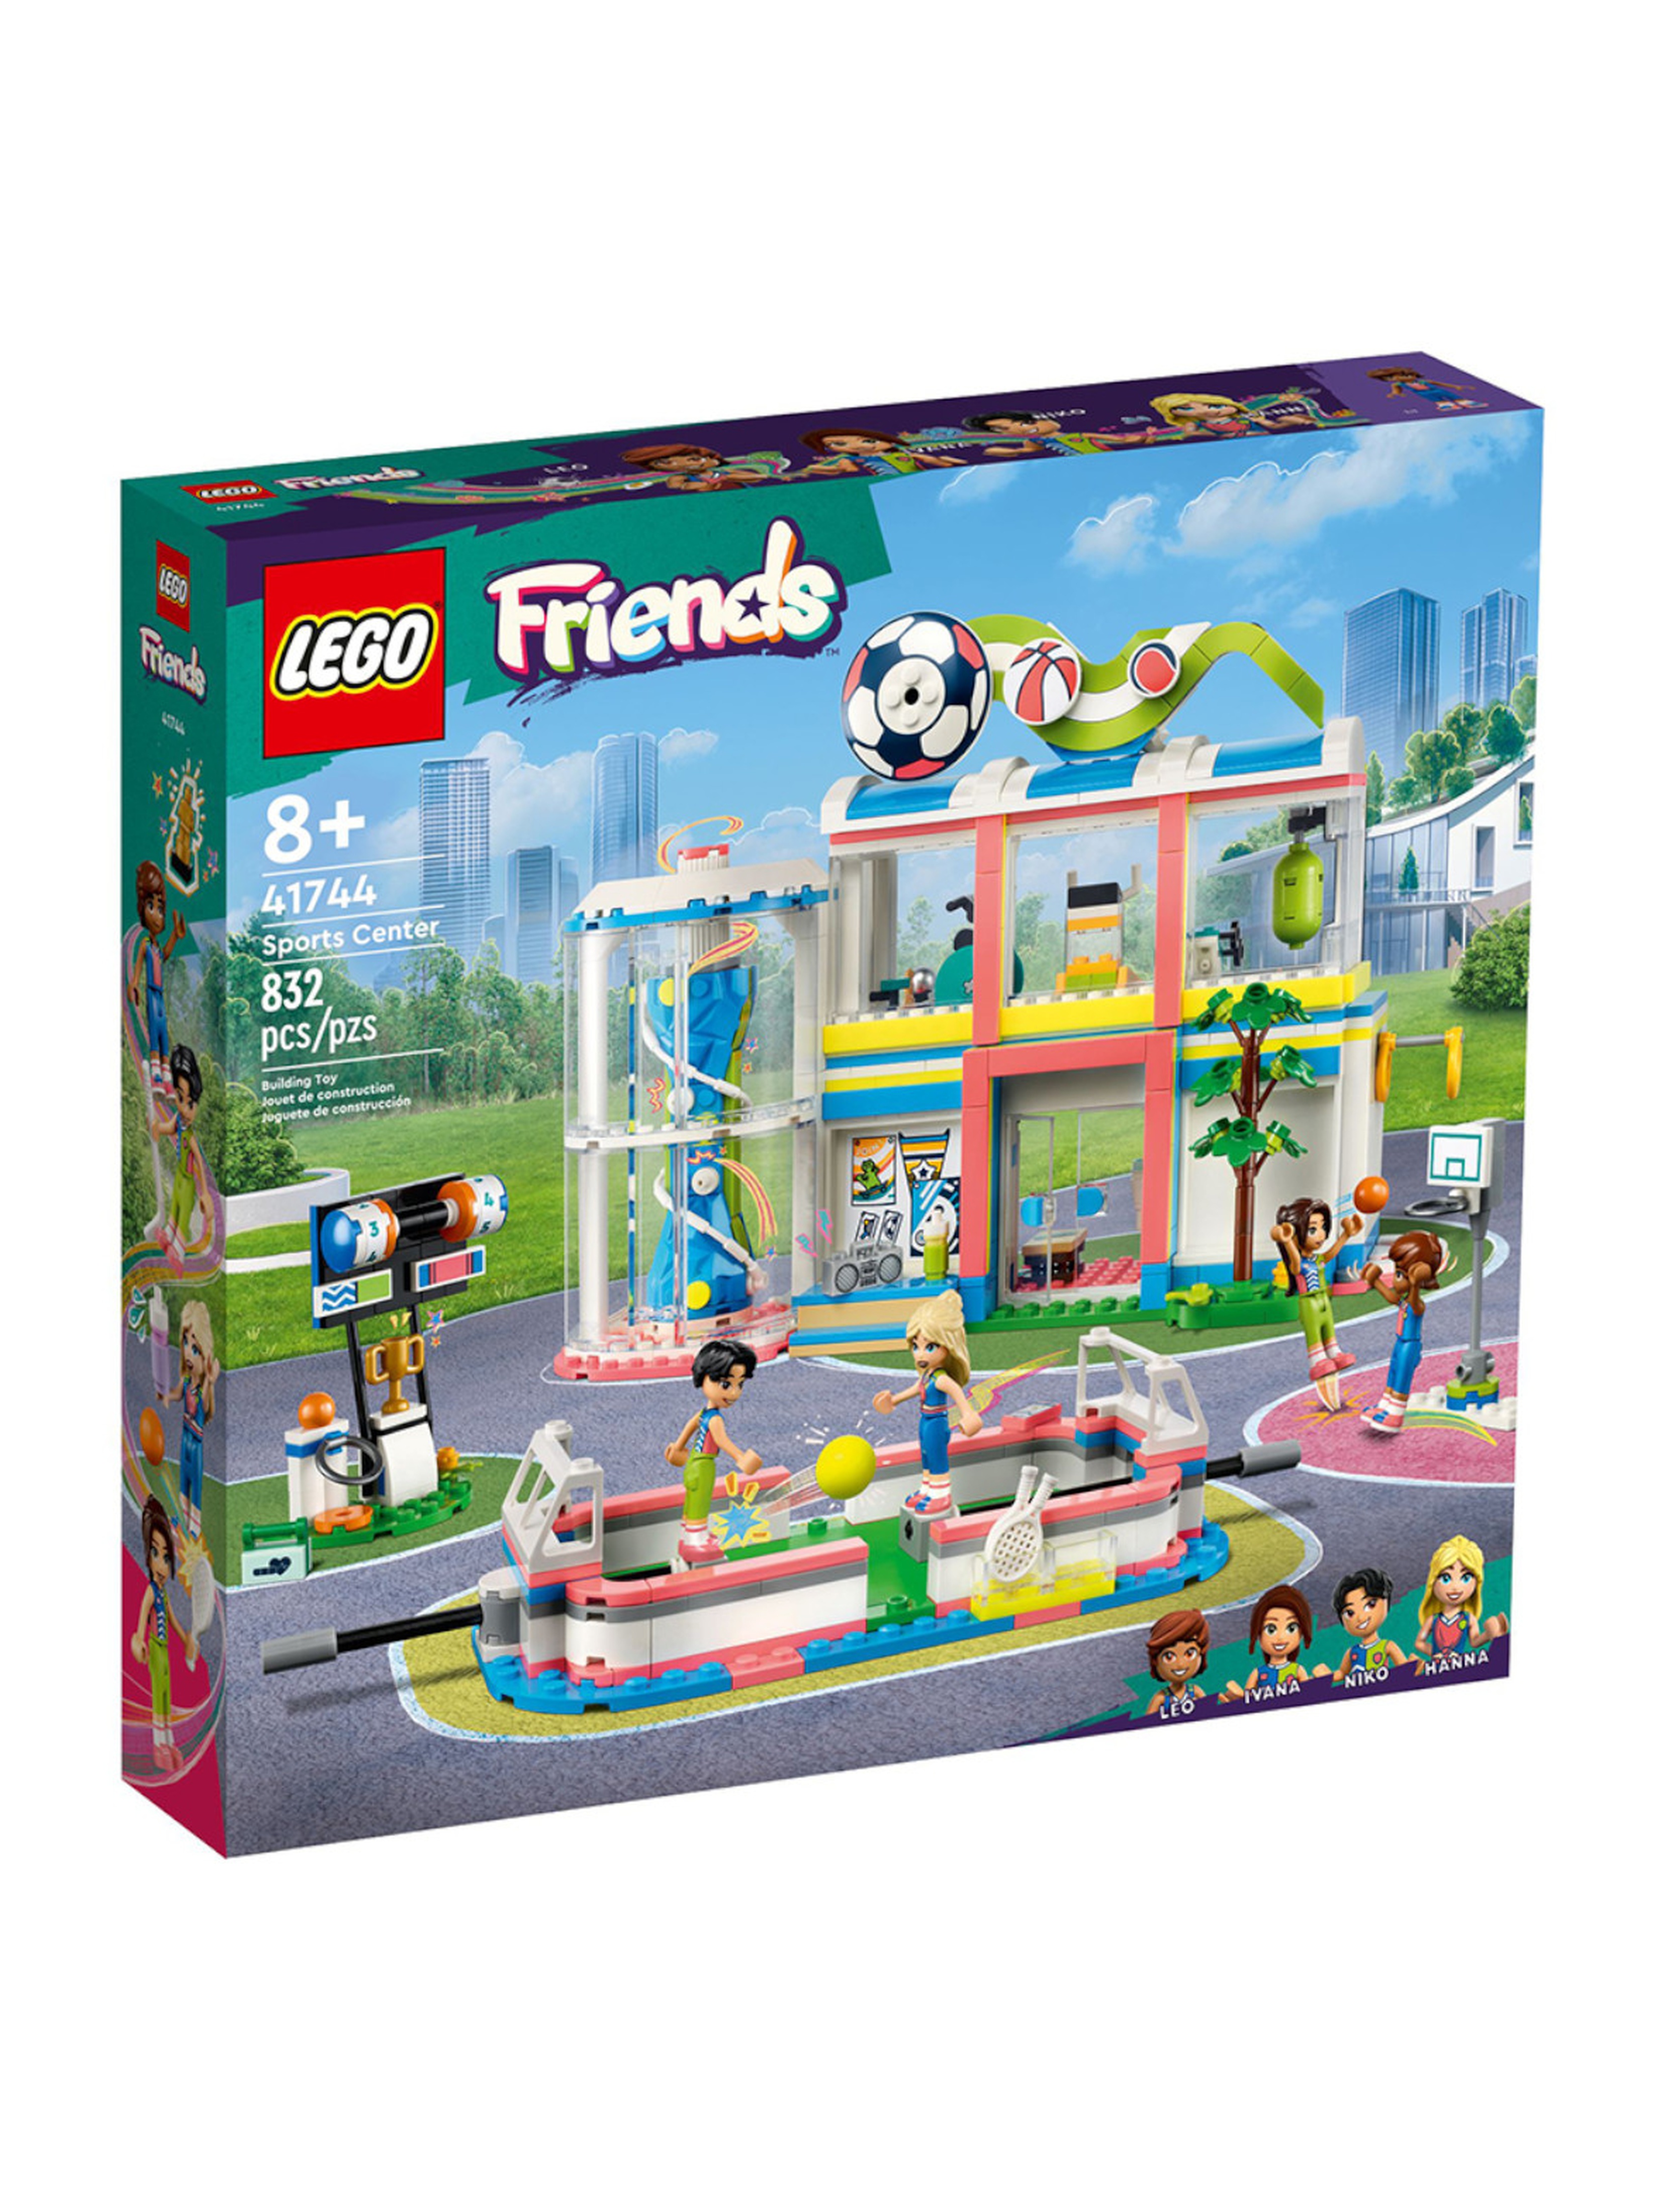 Klocki LEGO Friends 41744 Centrum sportowe - 832 elementy, wiek 8 +